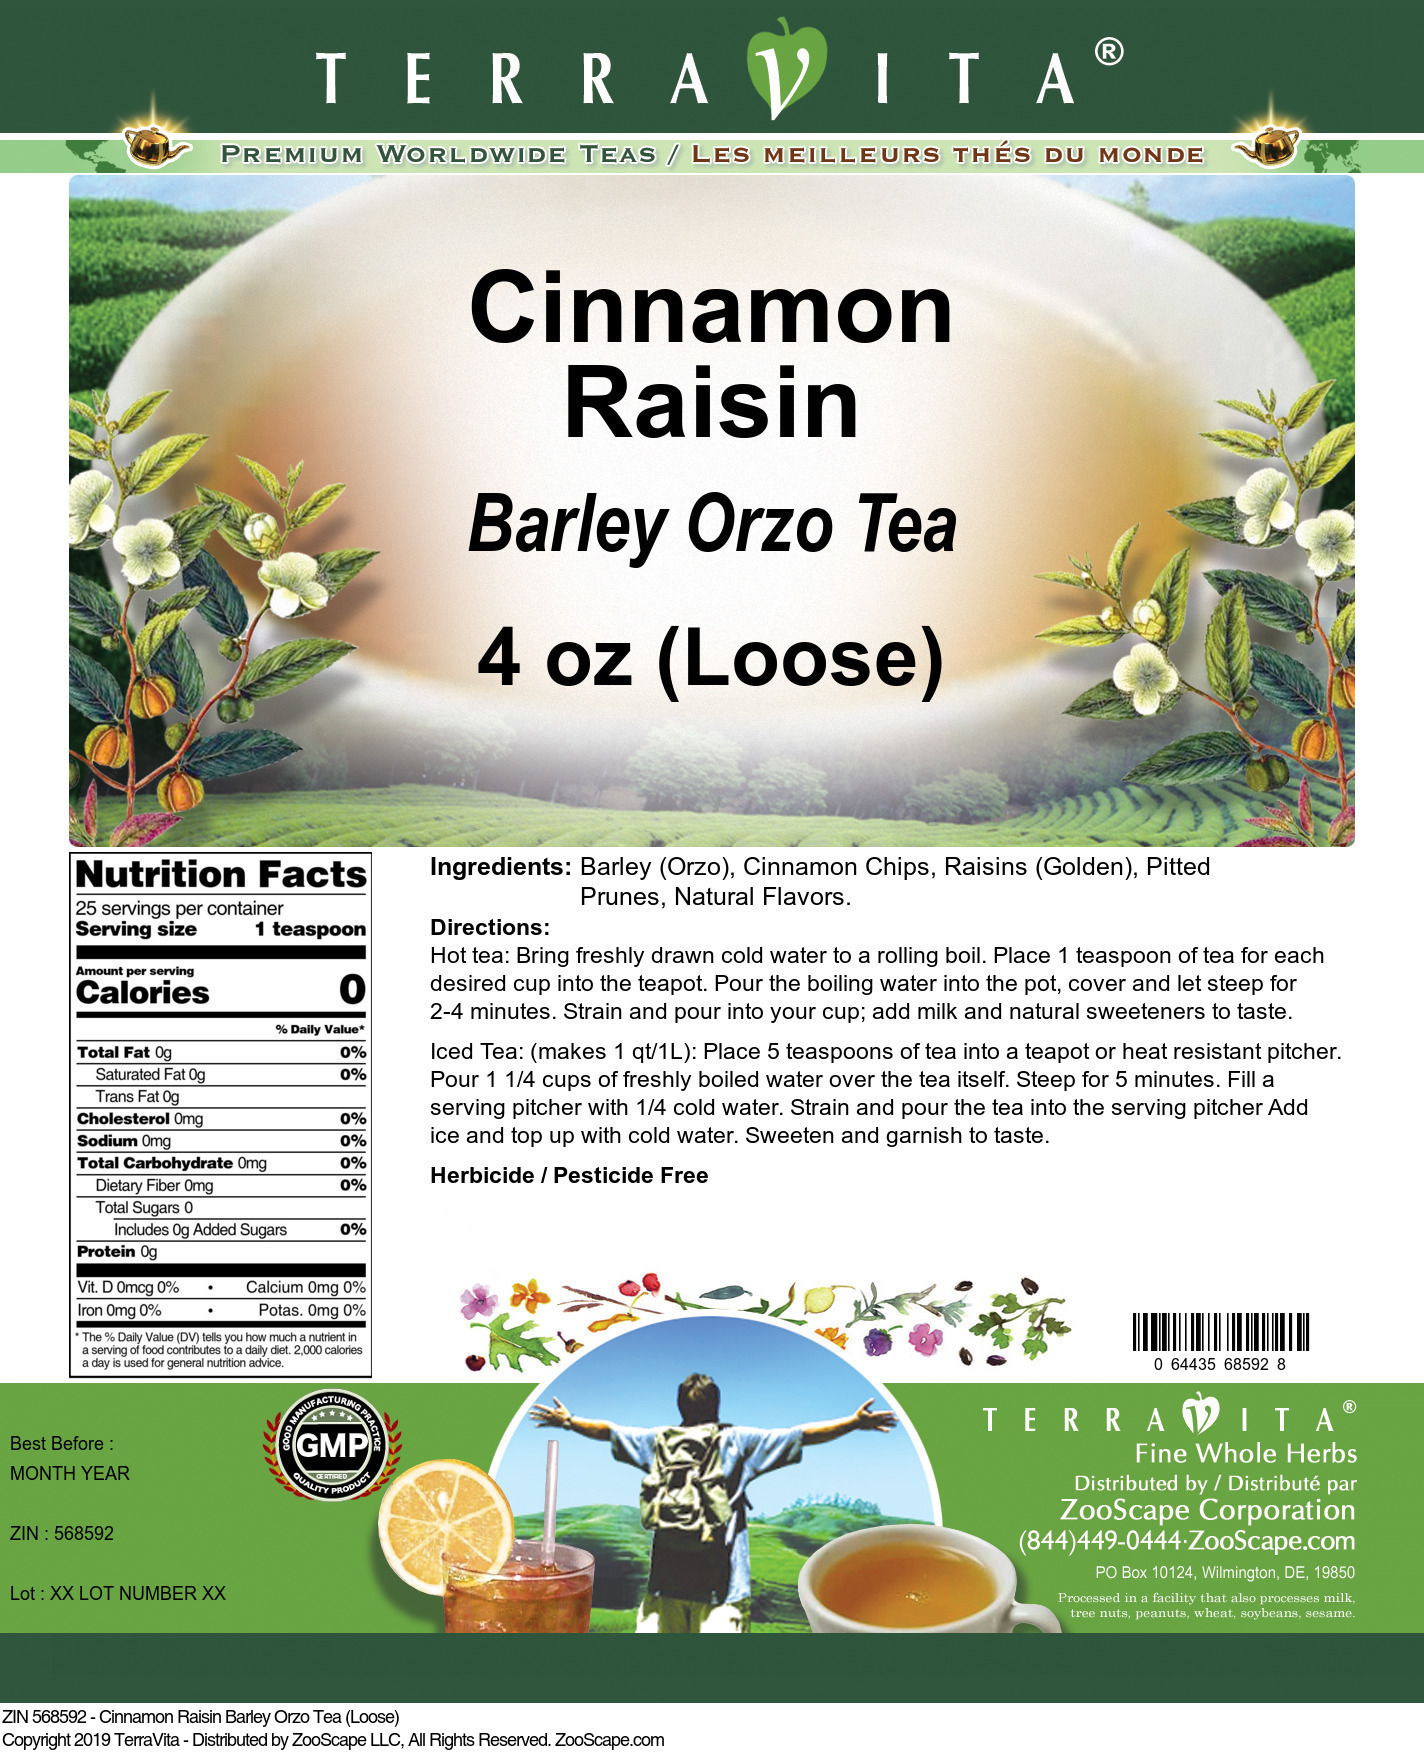 Cinnamon Raisin Barley Orzo Tea (Loose) - Label